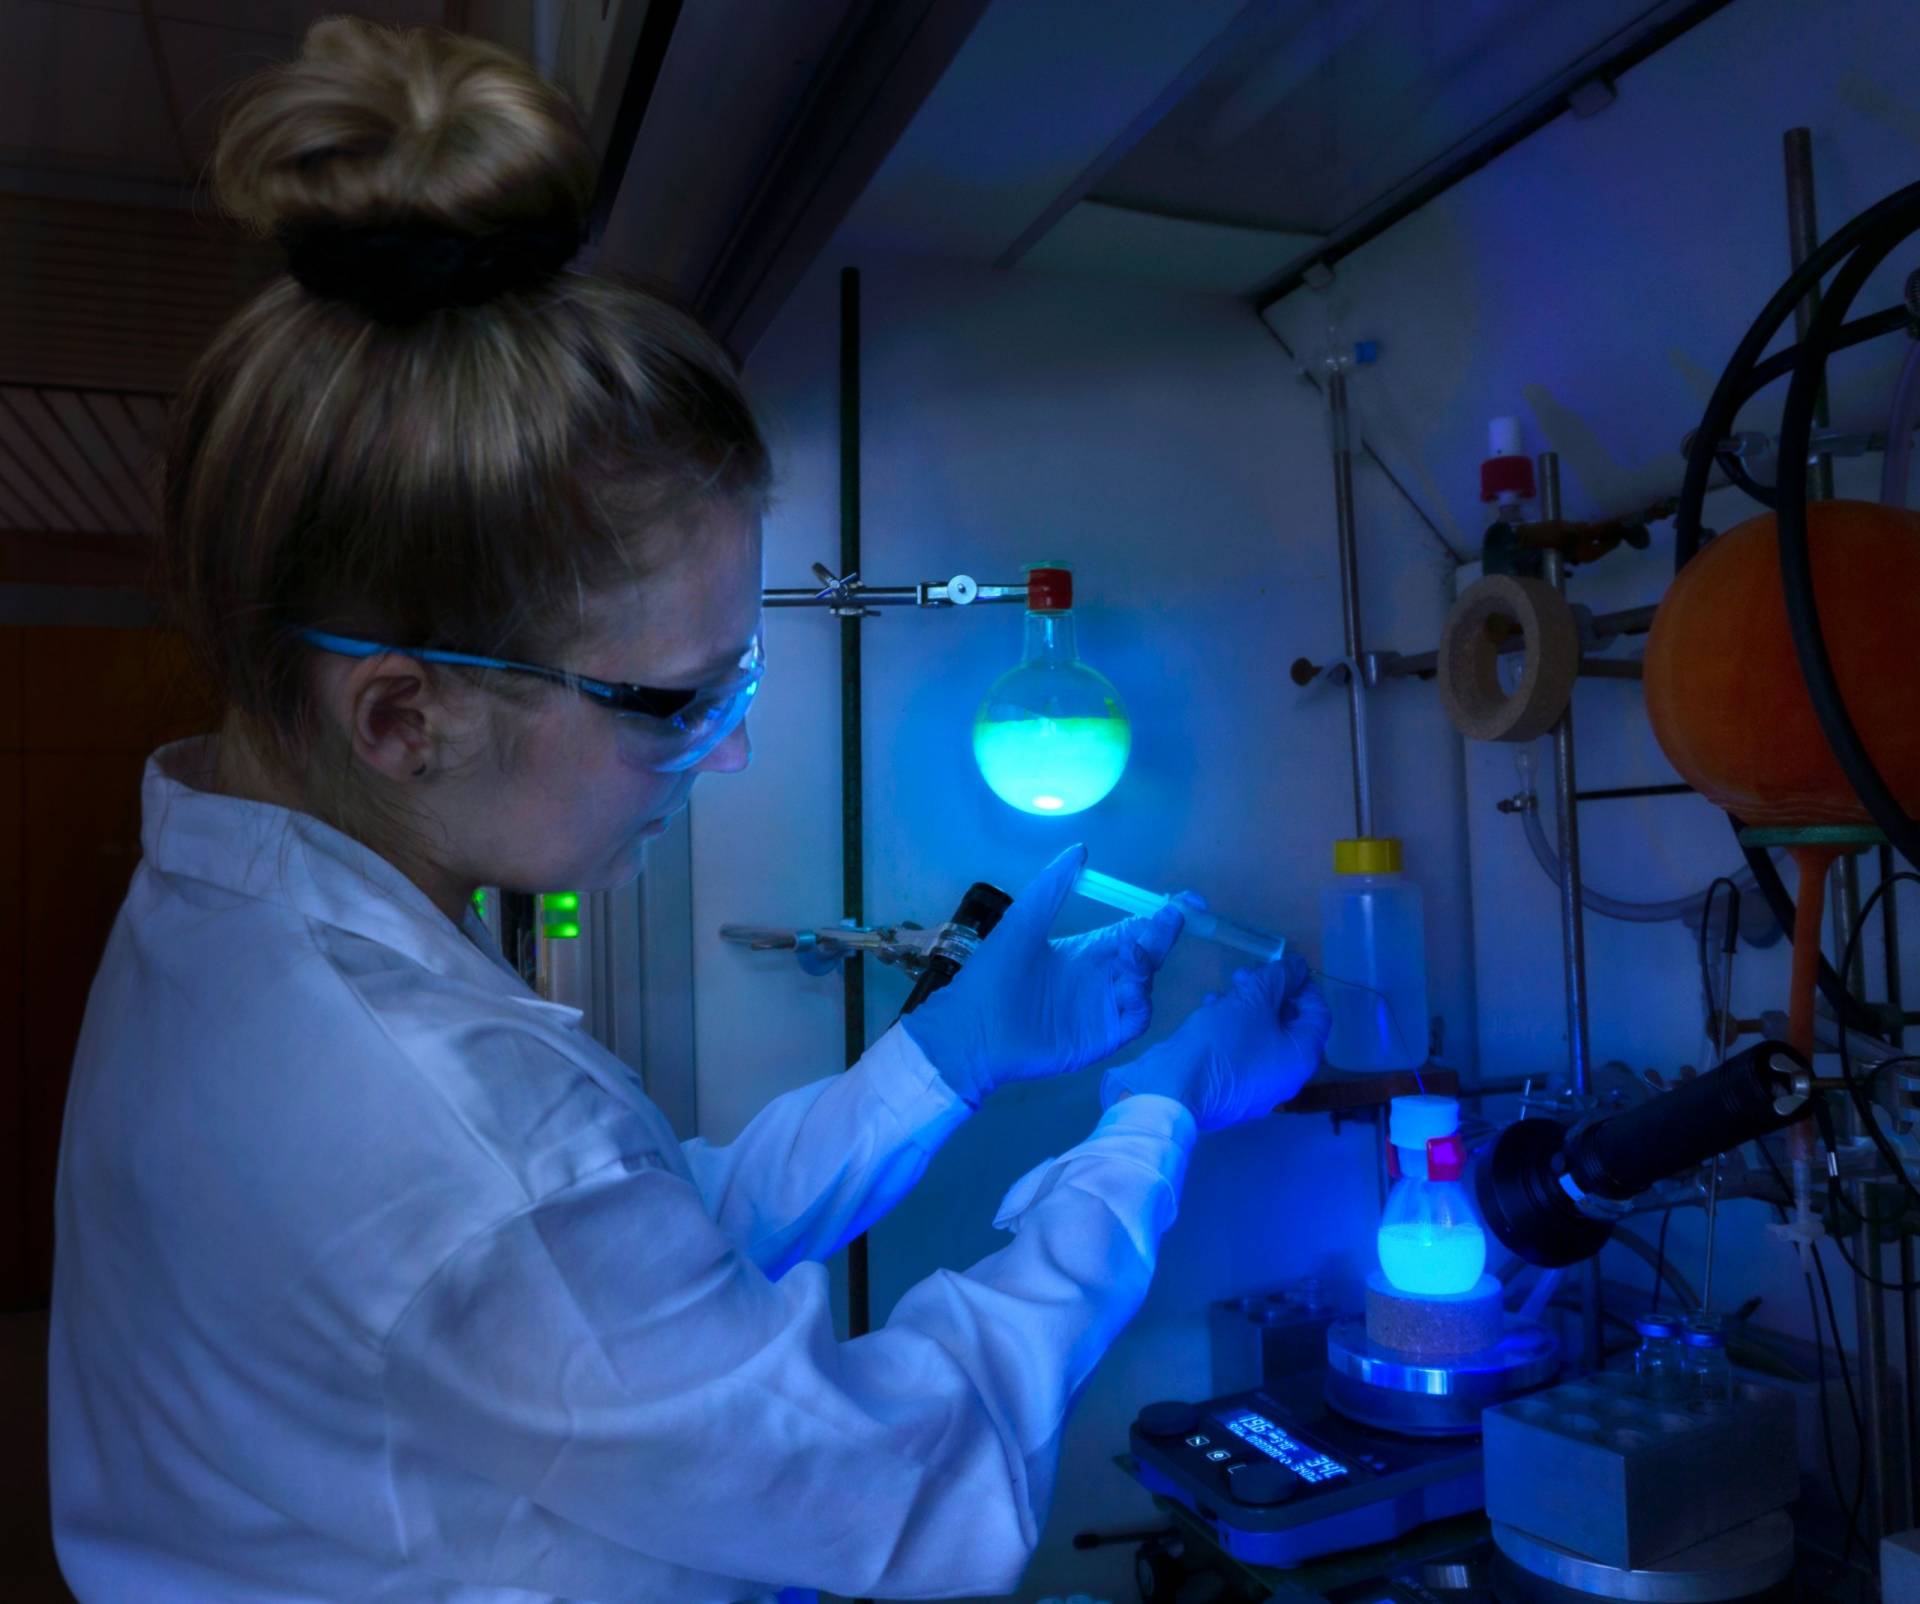 Studentin arbeitet in einem dunklen Labor mit fluoriszierenden Substanzen